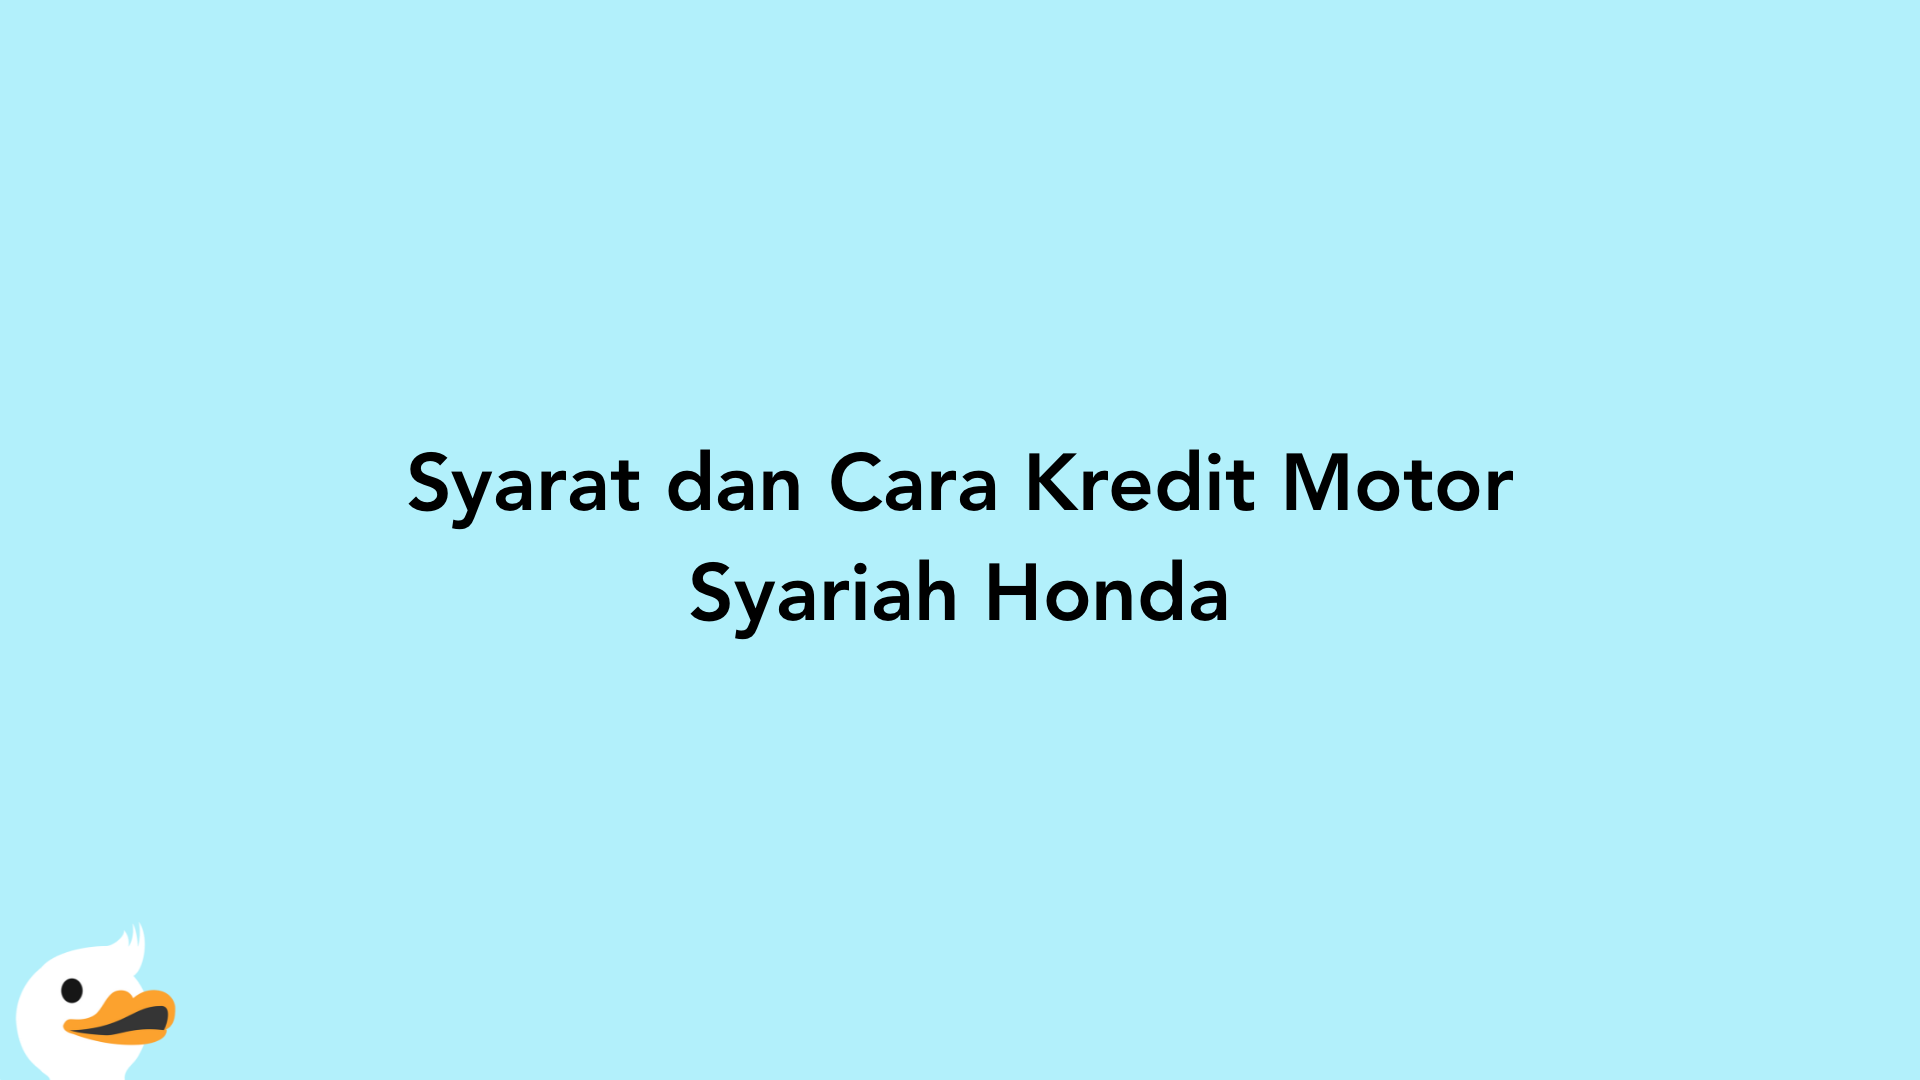 Syarat dan Cara Kredit Motor Syariah Honda